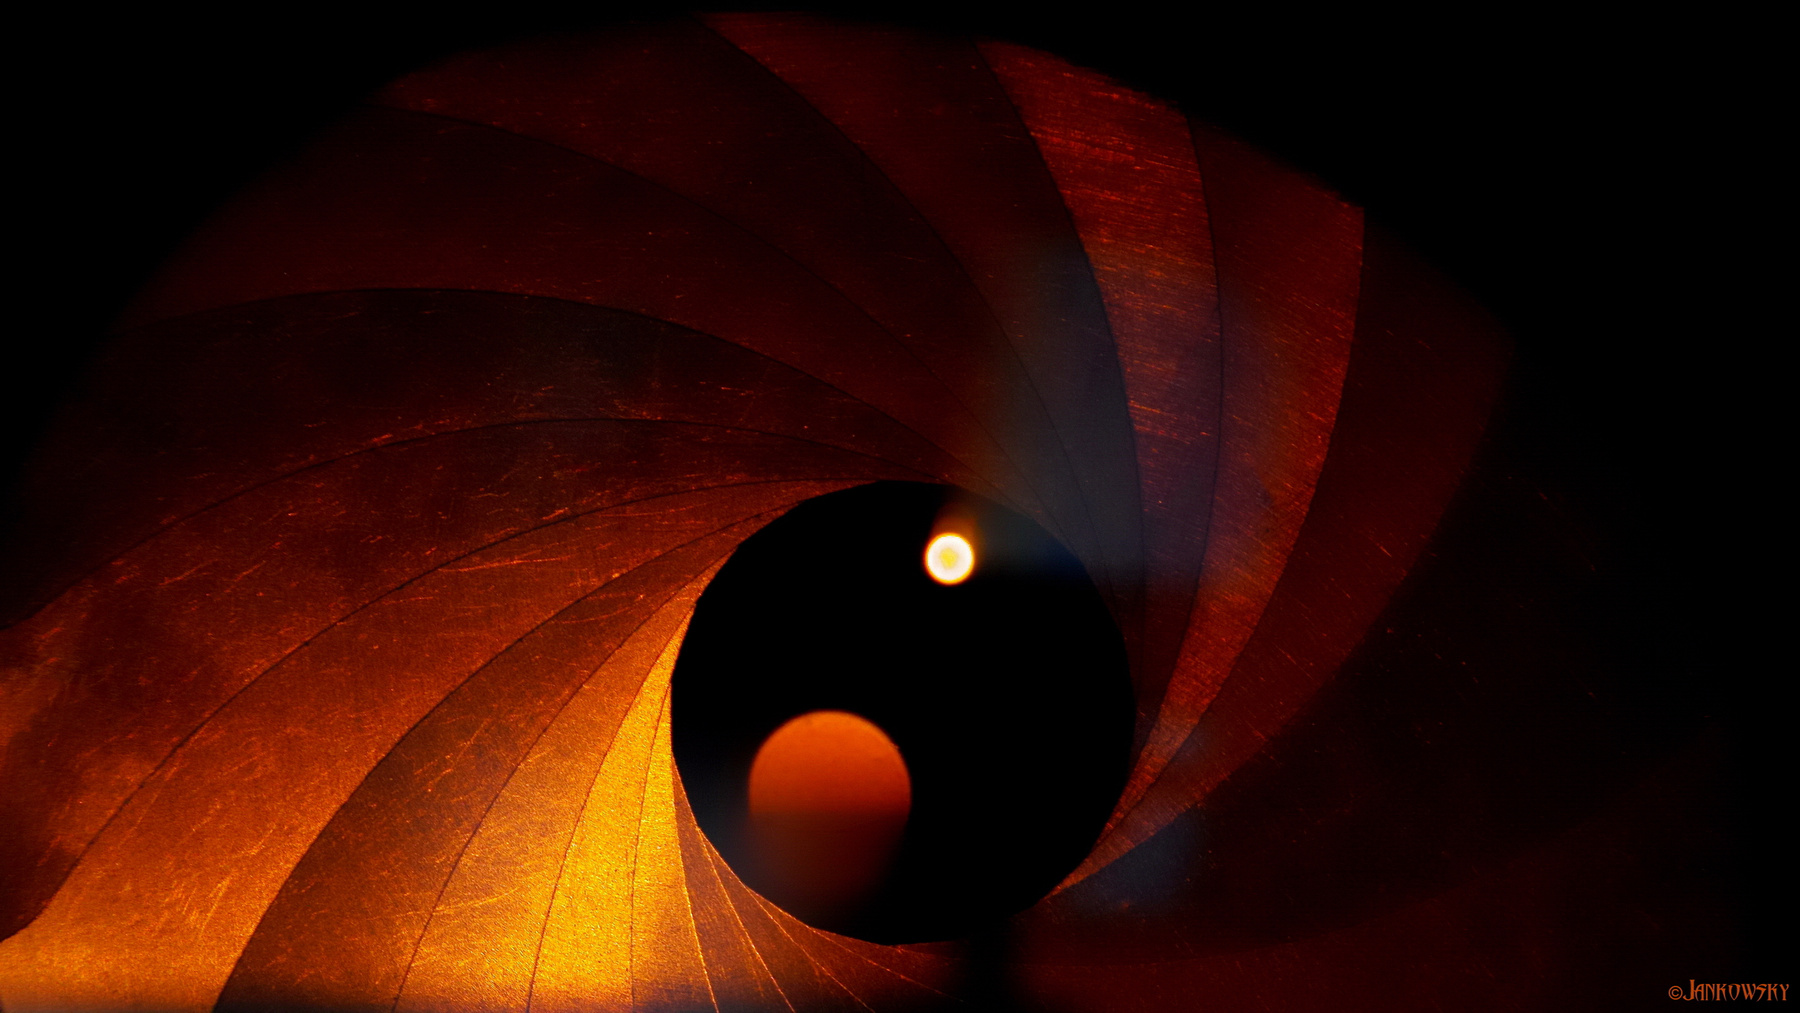 Черная дыра поглощает систему двойной звезды концептуальное мысль черная дыра ирисовая диафрагма jvcr омск космос минимализм черное оранжевое foveon Sigma dp3 Quattro